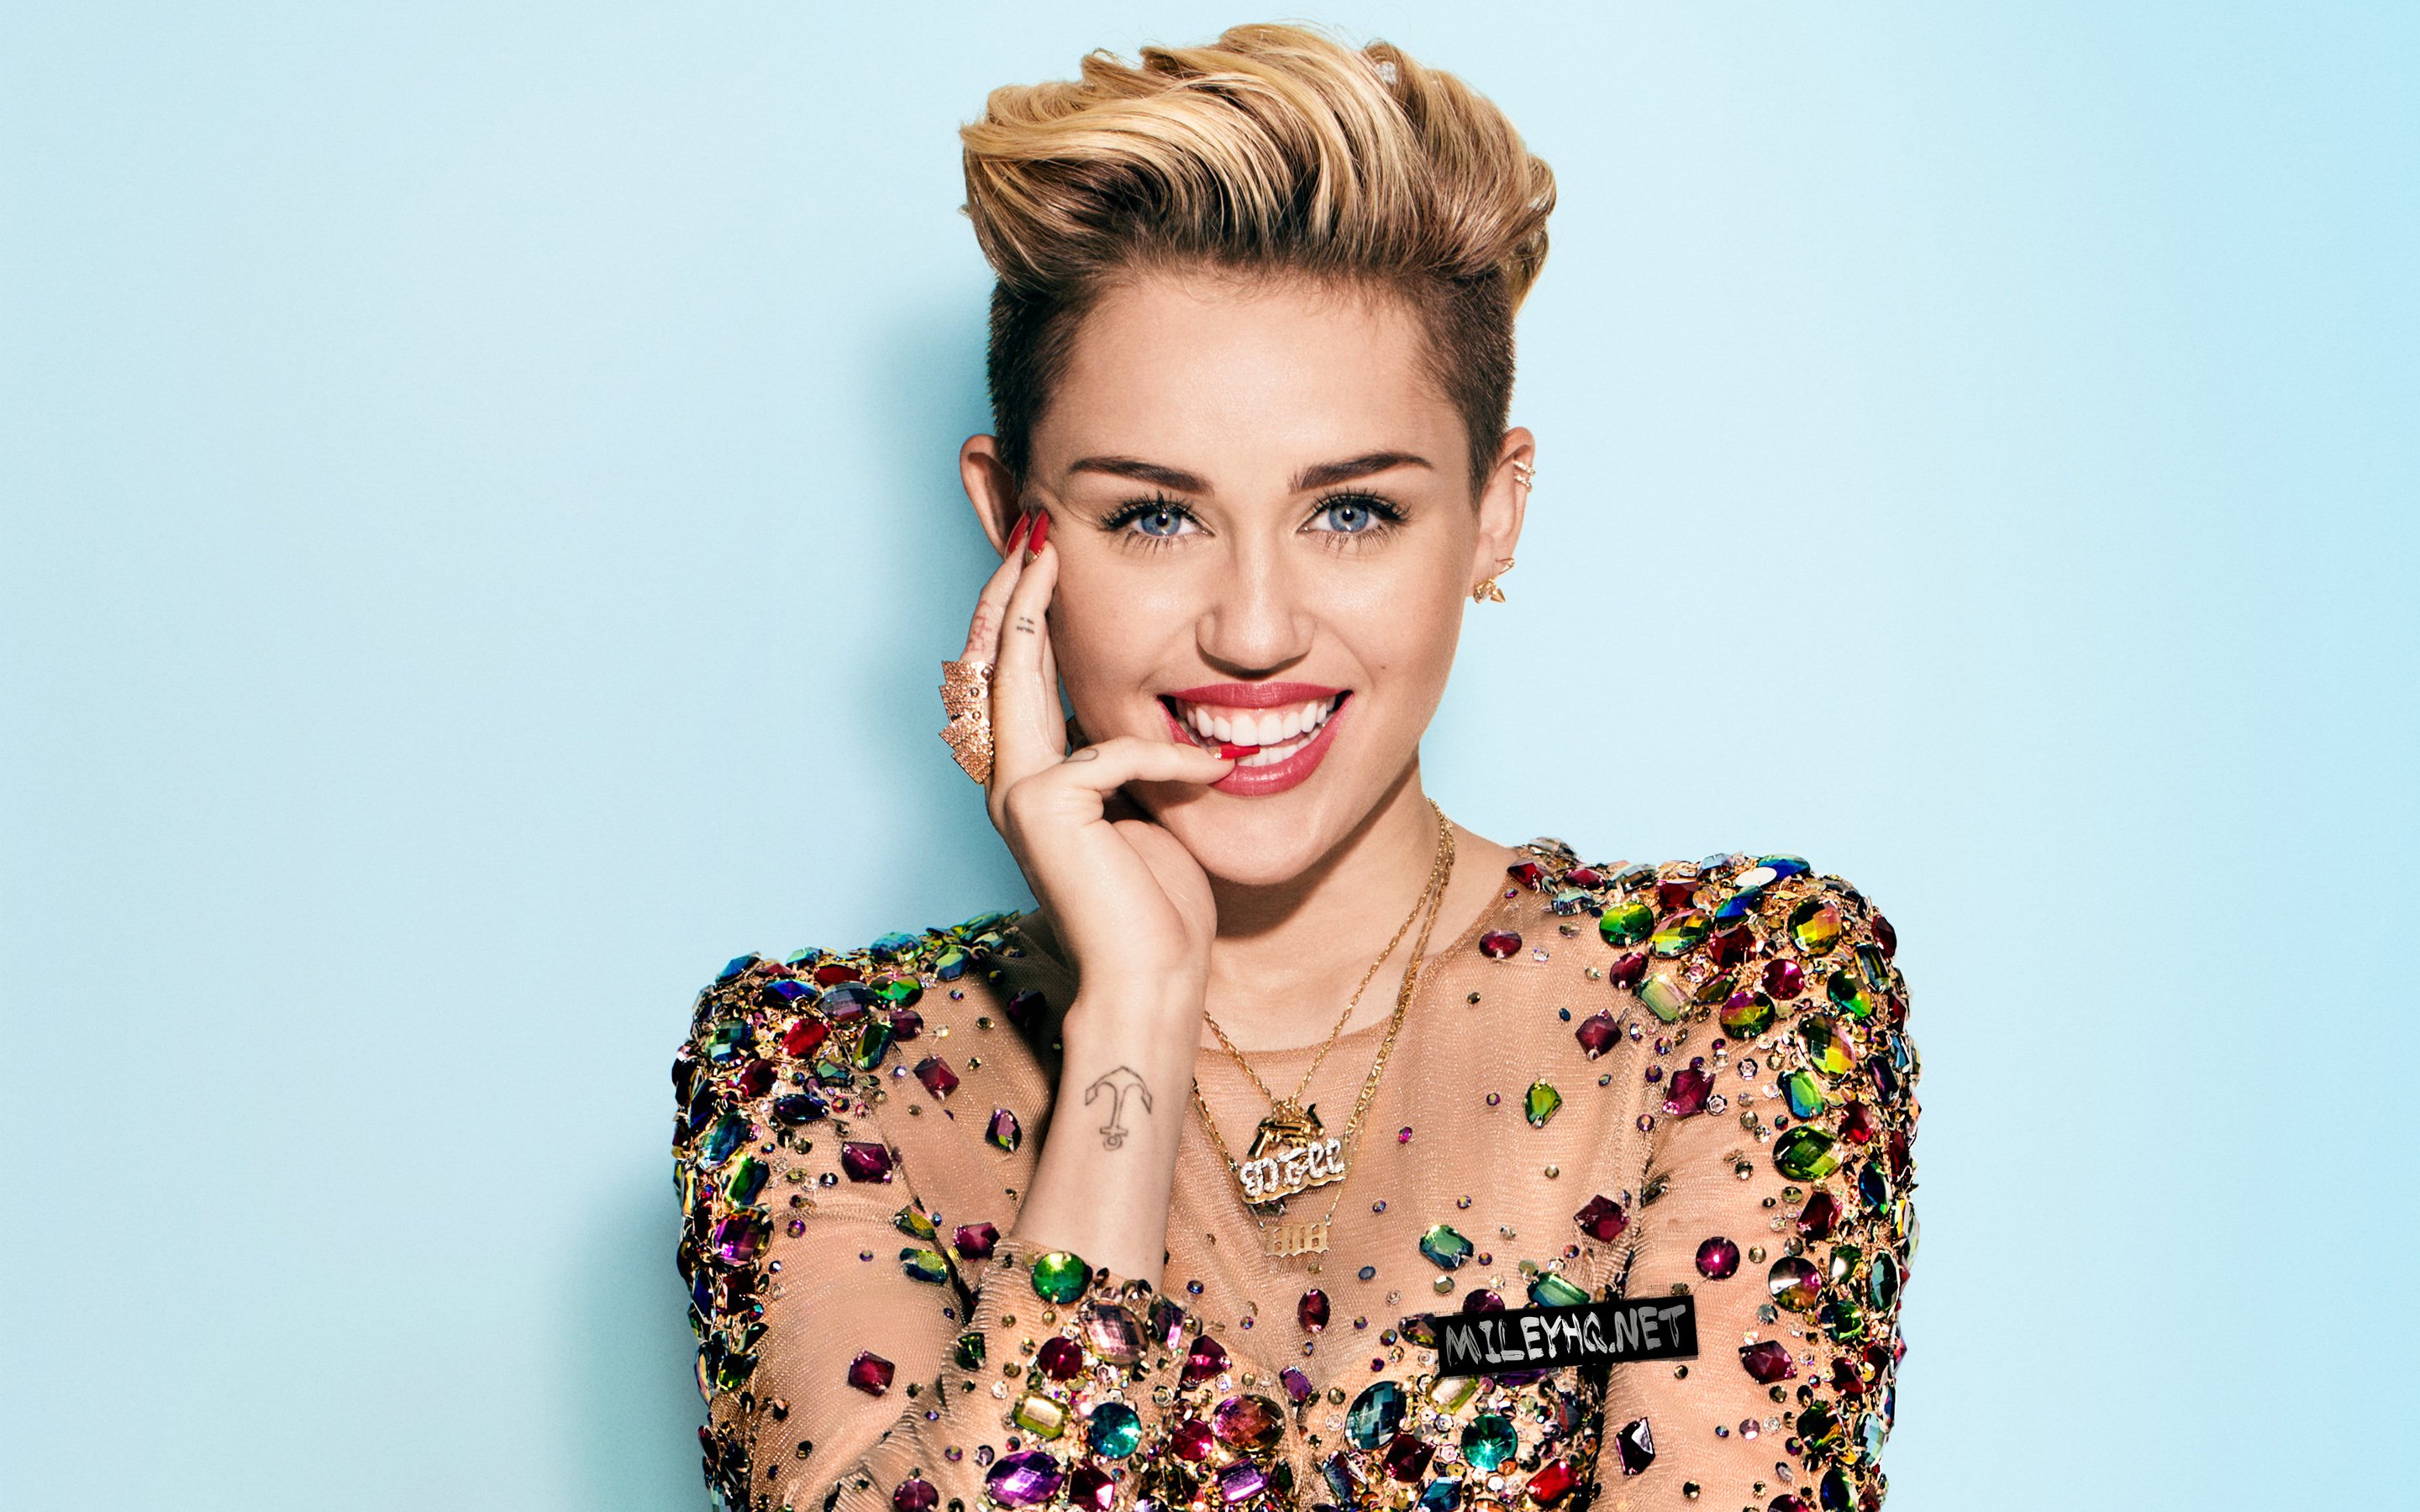 Майлі Сайрус (Miley Cyrus). Біографія. Фото. Особисте життя